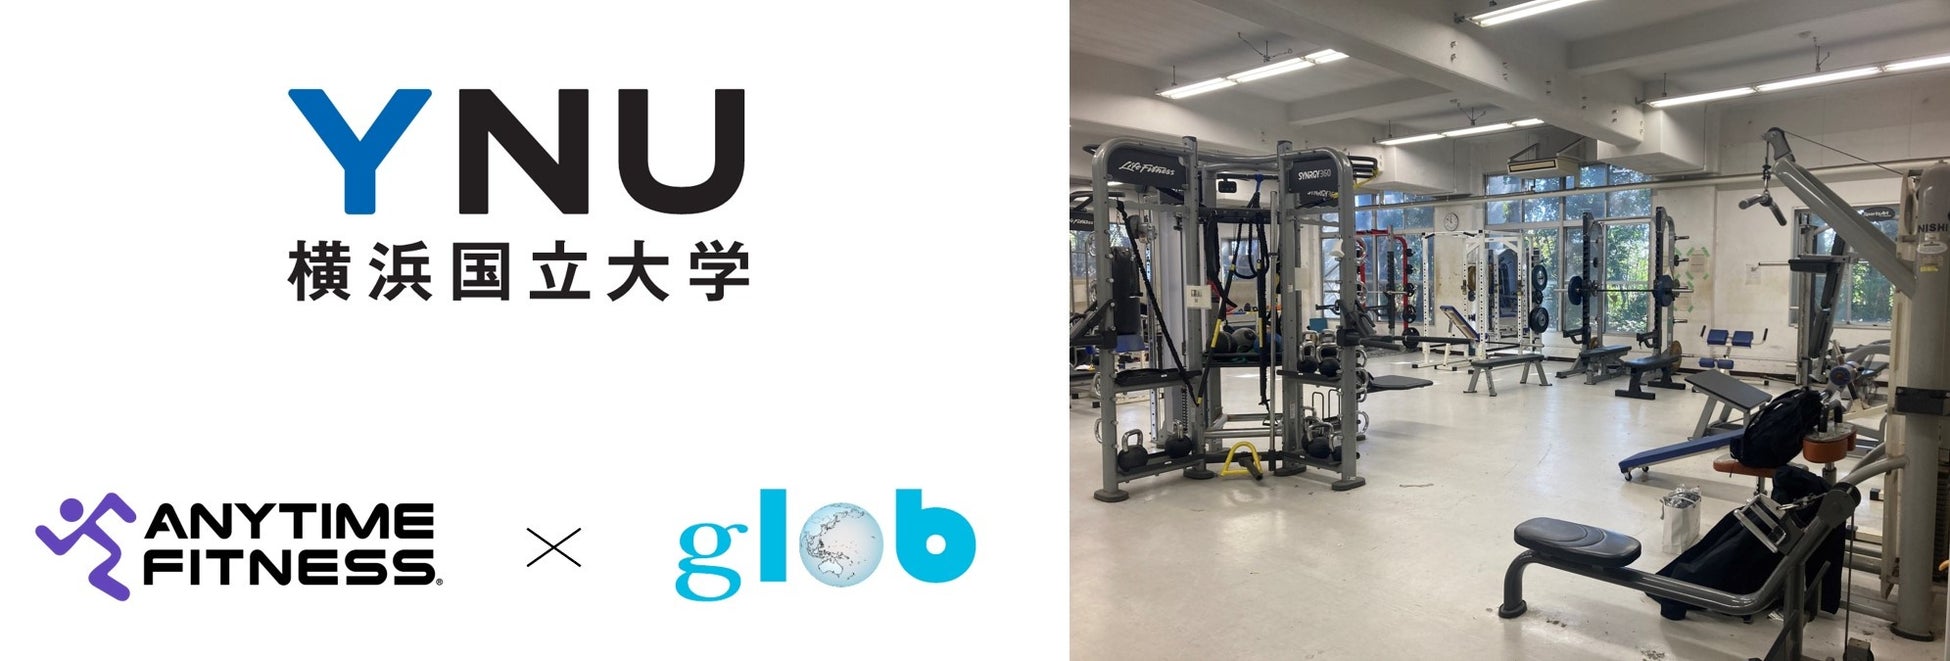 エニタイムフィットネスのトレーニングマシン寄贈活動に賛同、青山商事グループ会社「glob」がマシンを横浜国立大学へ寄贈